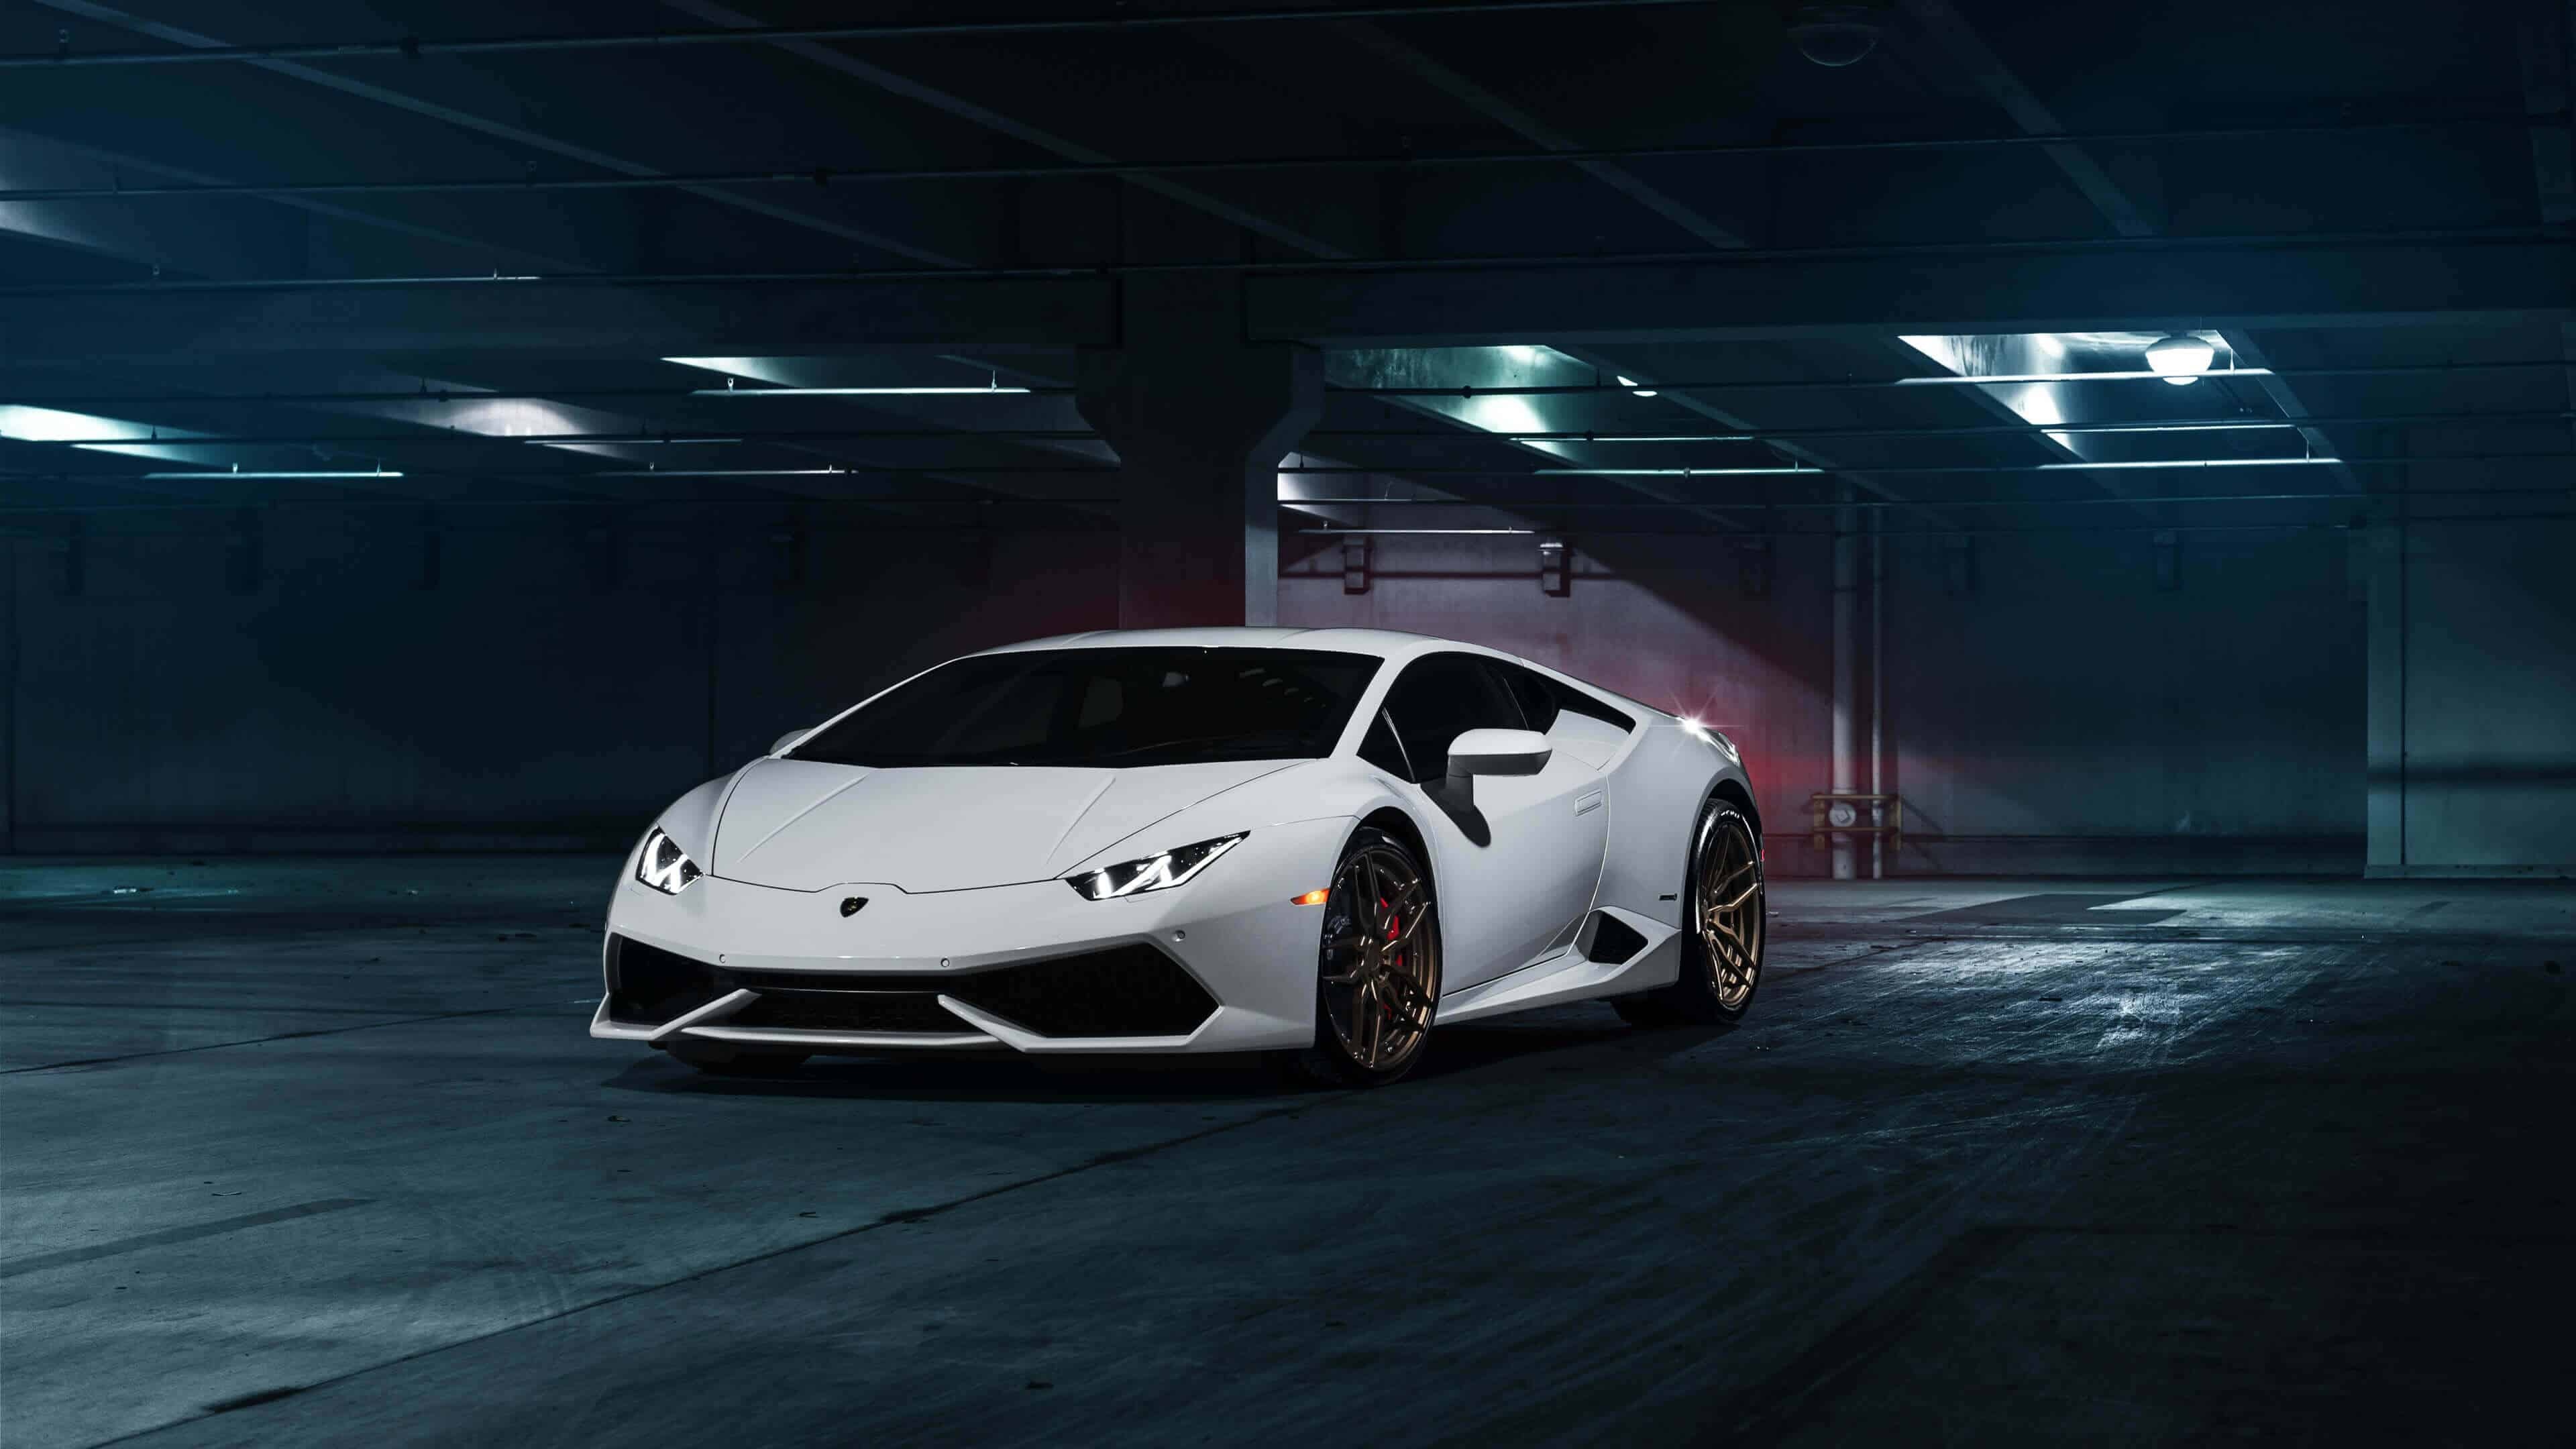 UHD 4K wallpaper, Lamborghini Huracan, Unmatched clarity, Impressive visuals, 3840x2160 4K Desktop